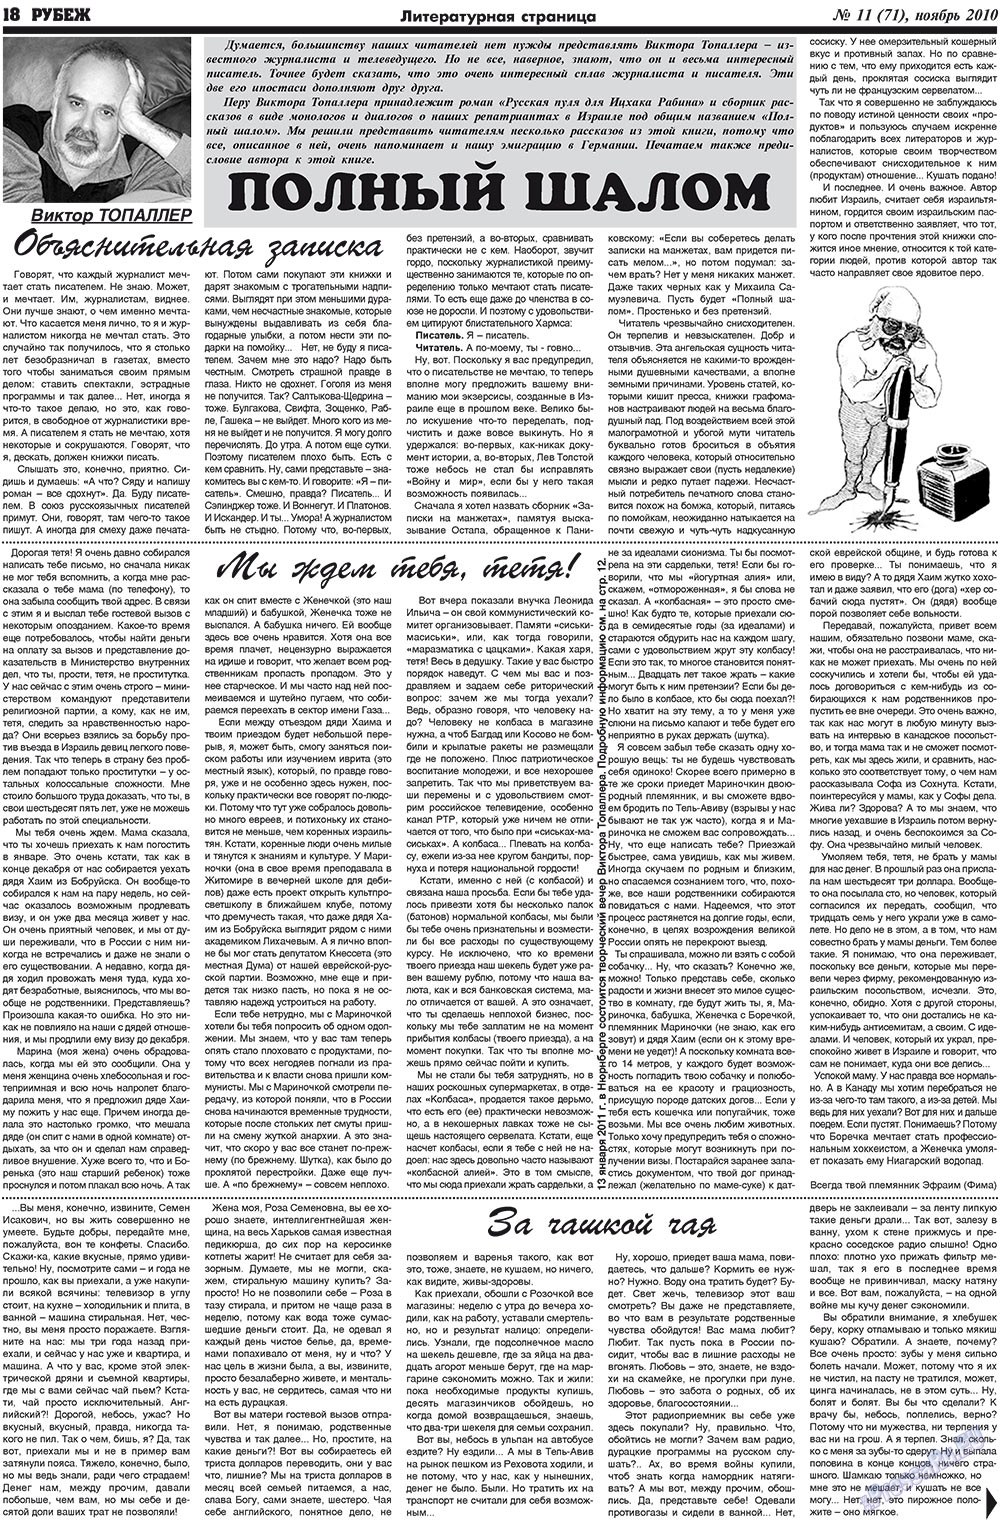 Рубеж (газета). 2010 год, номер 11, стр. 18